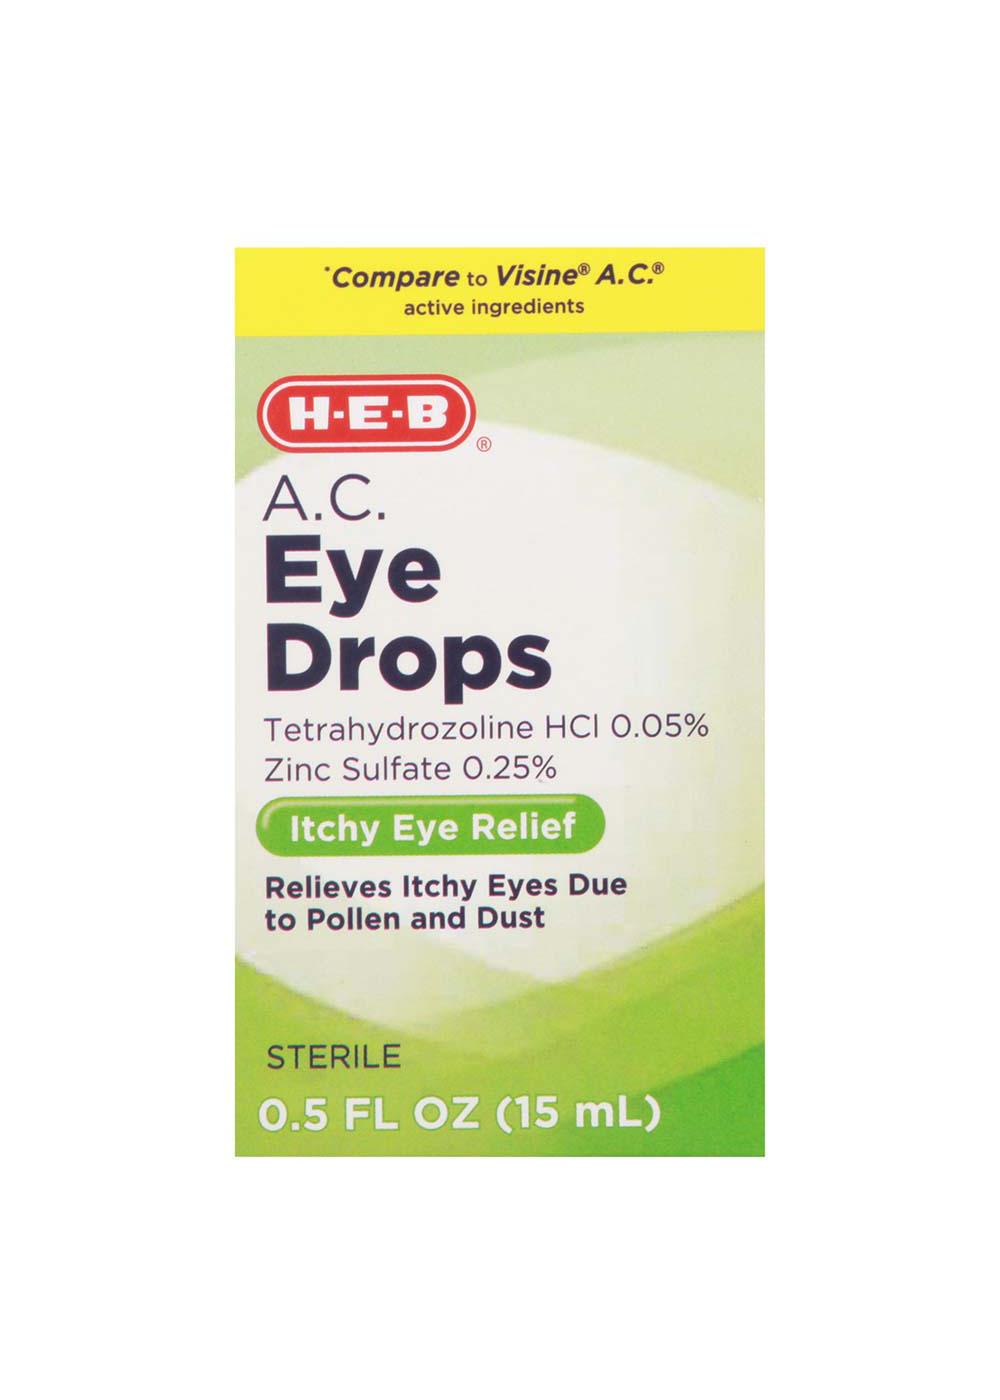 H-E-B A.C. Eye Drops